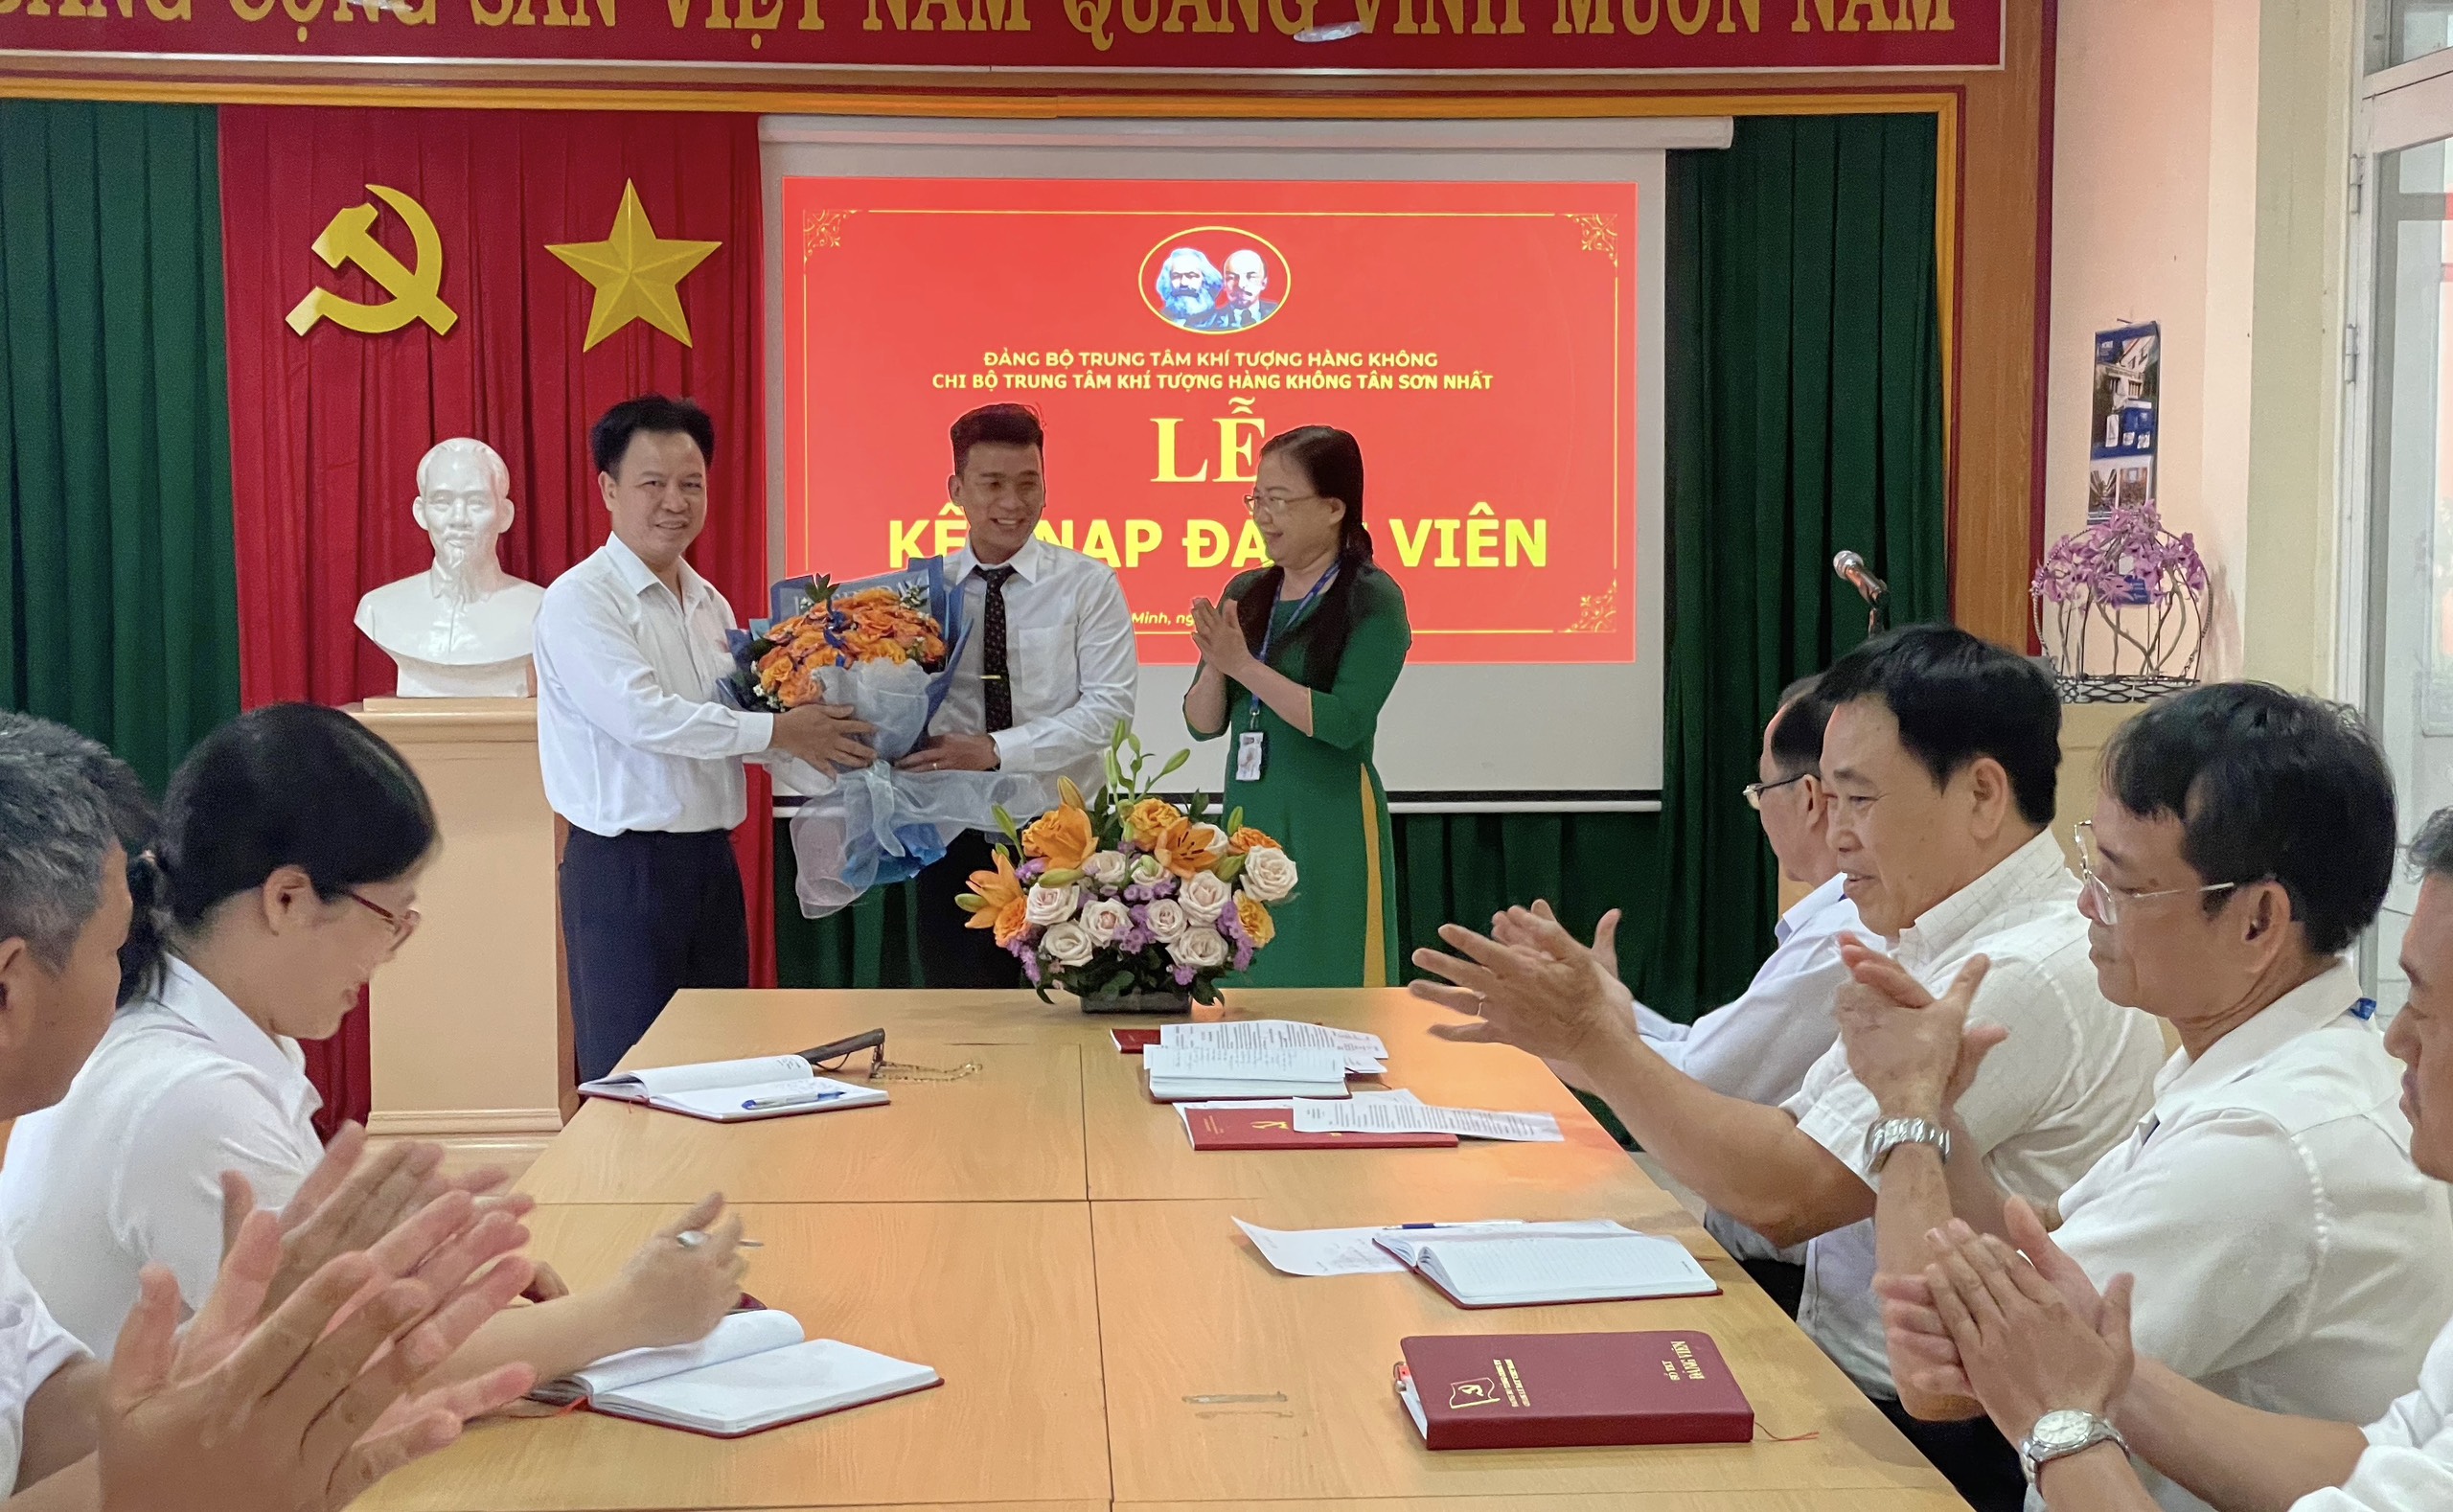 Chi bộ Trung tâm Khí tượng hàng không Tân Sơn Nhất tổ chức Lễ kết nạp đảng viên mới